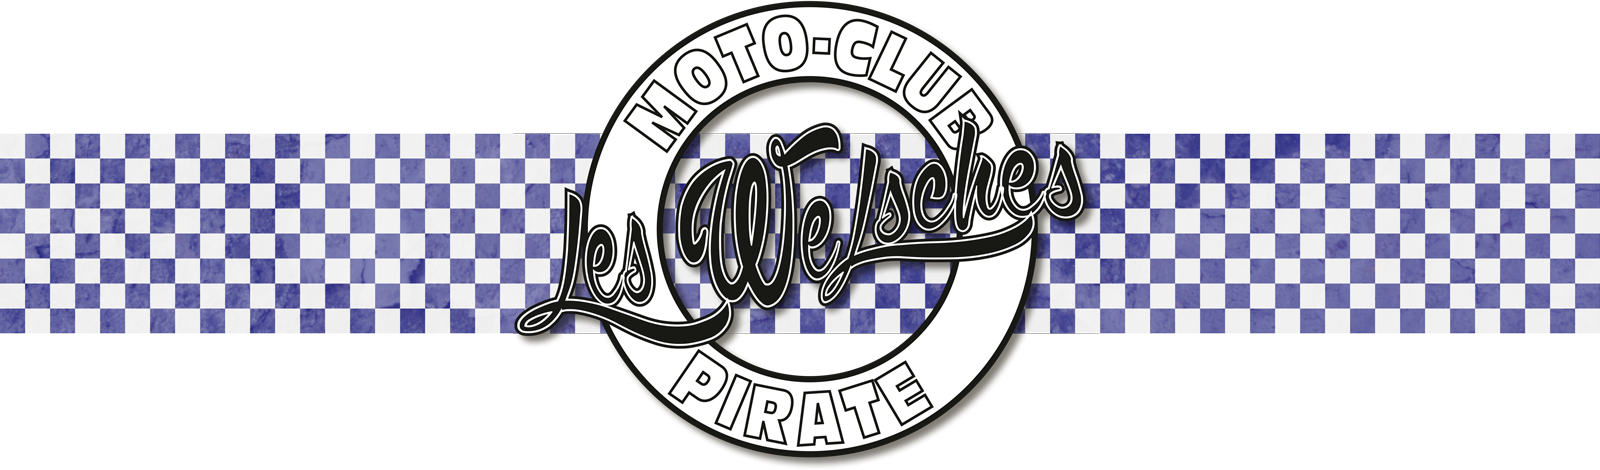 Logo Welsches vintage